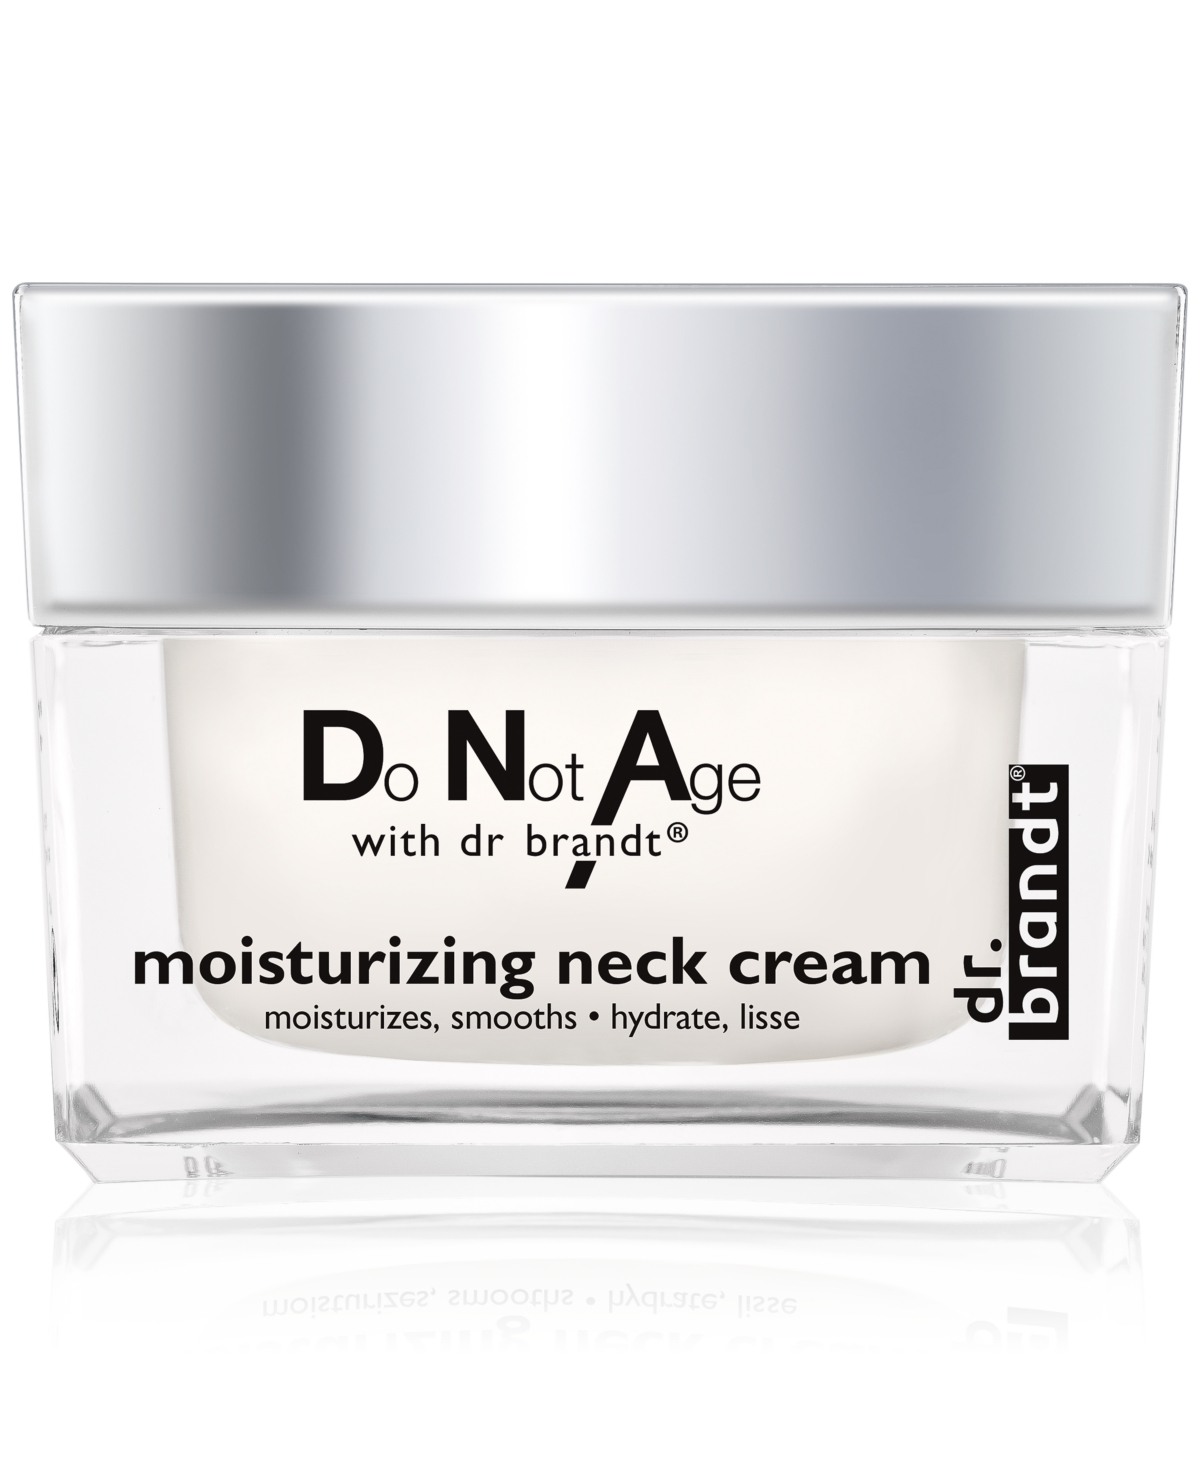 do not age moisturizing neck cream, 1.7 oz